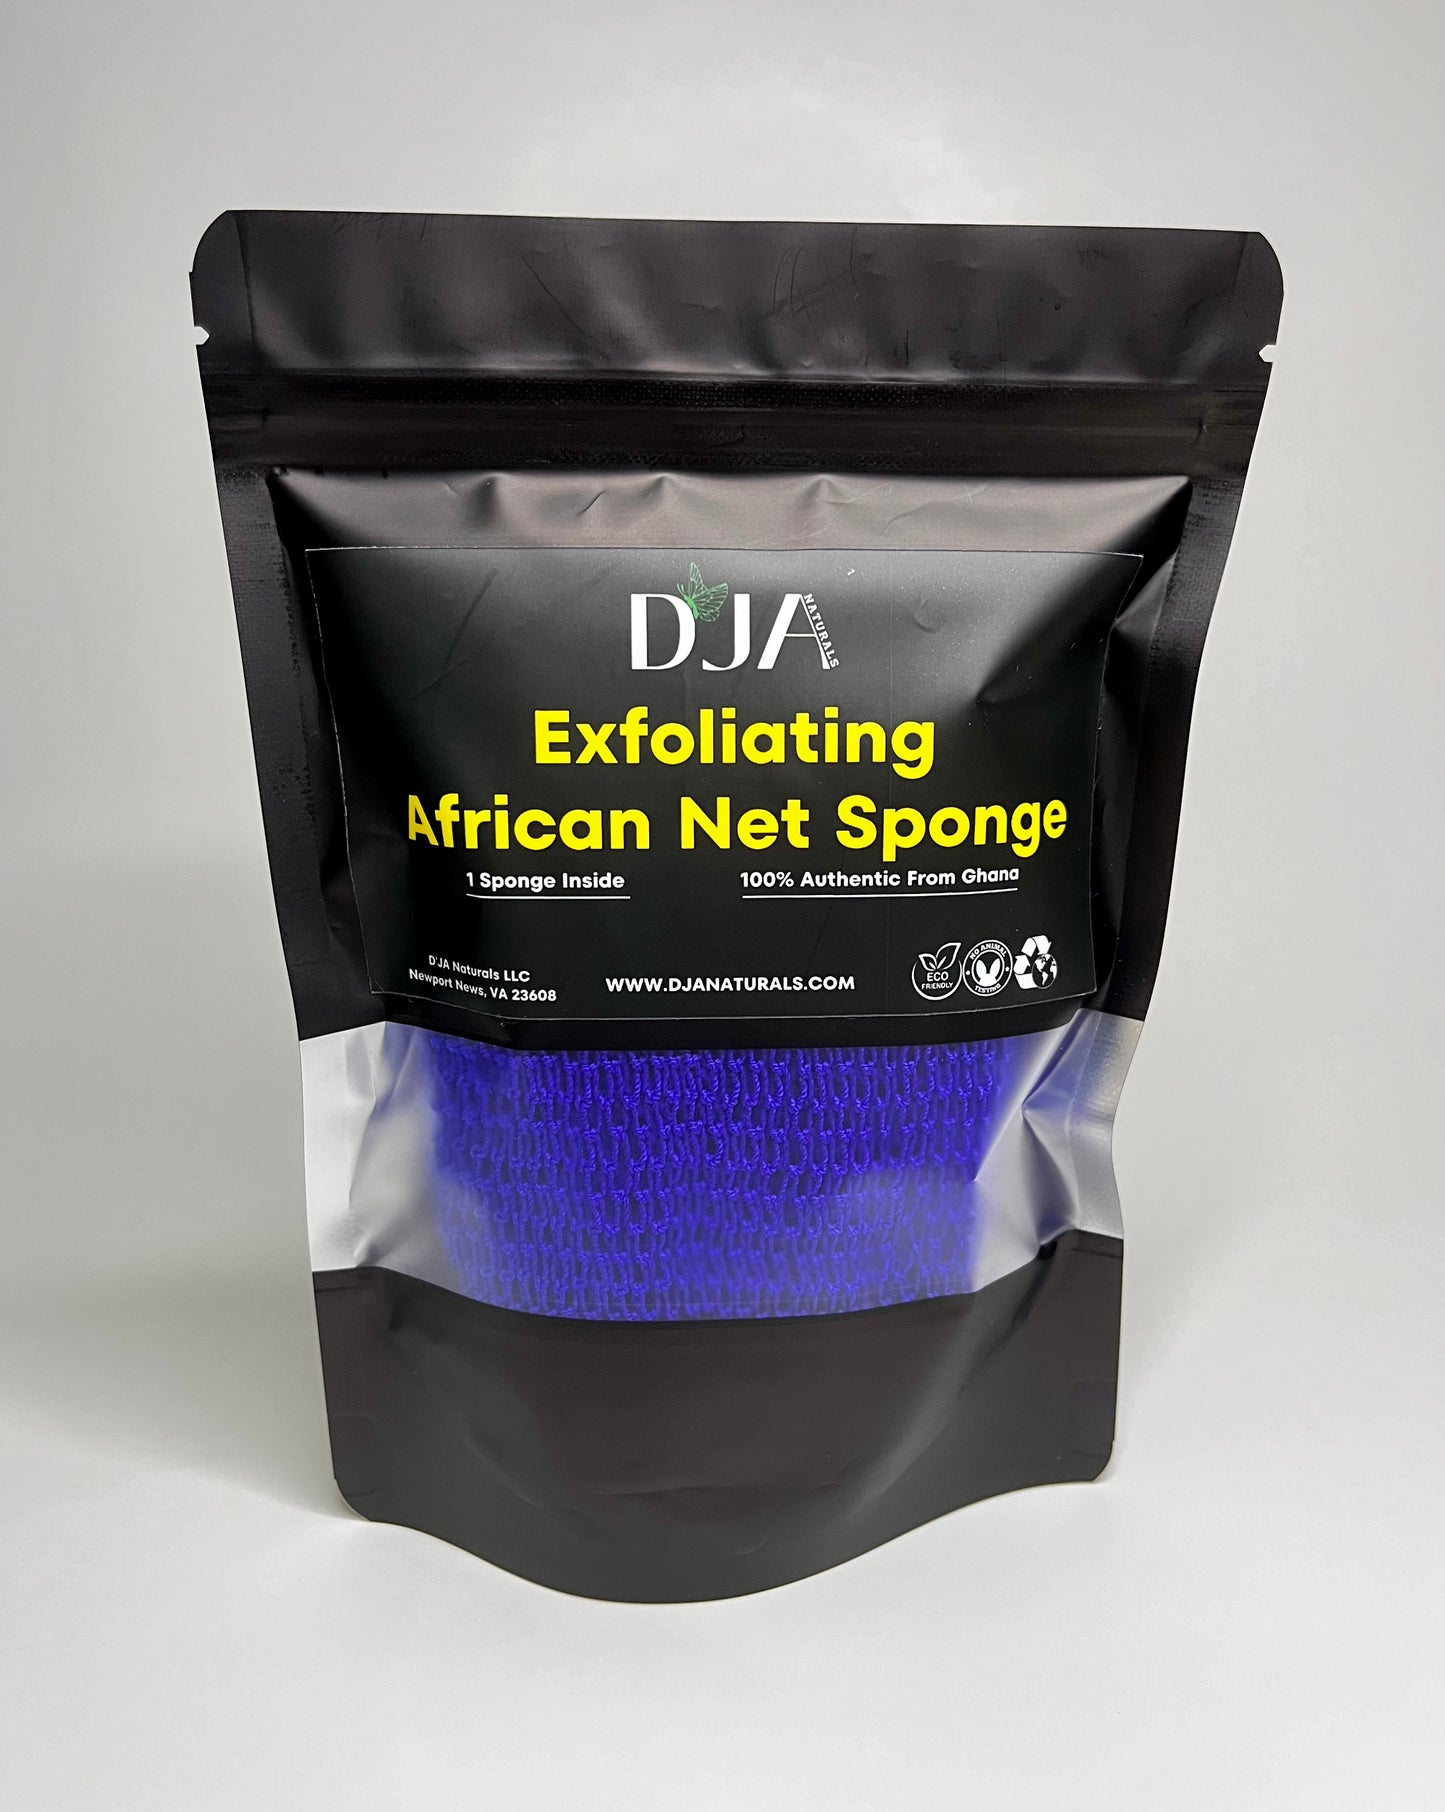 African Exfoliating Net Sponge